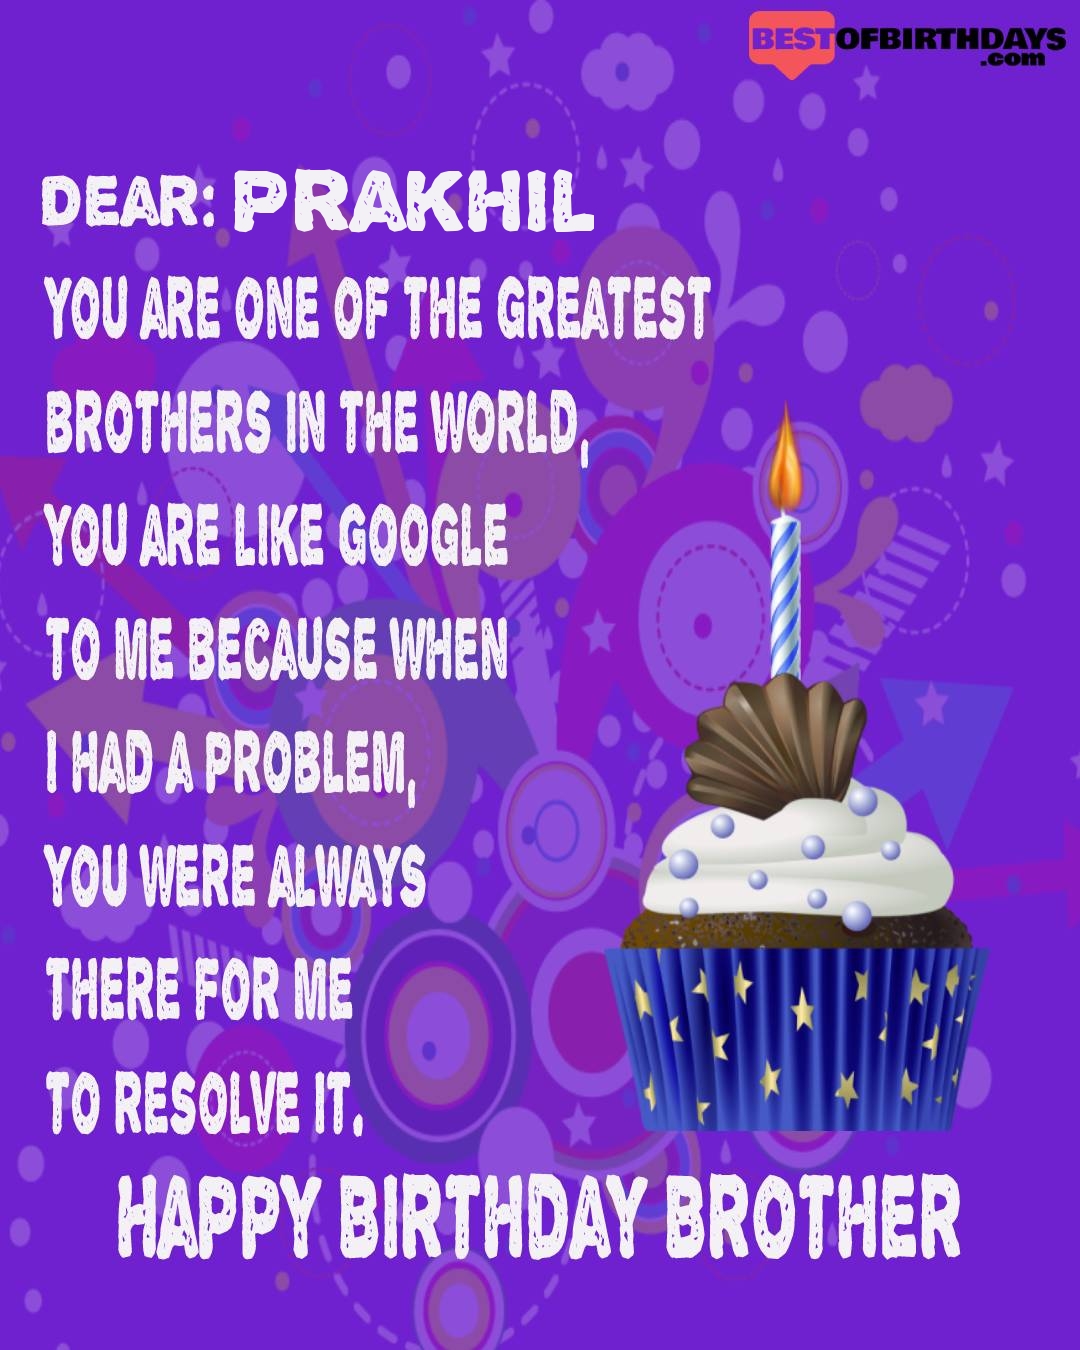 Happy birthday prakhil bhai brother bro